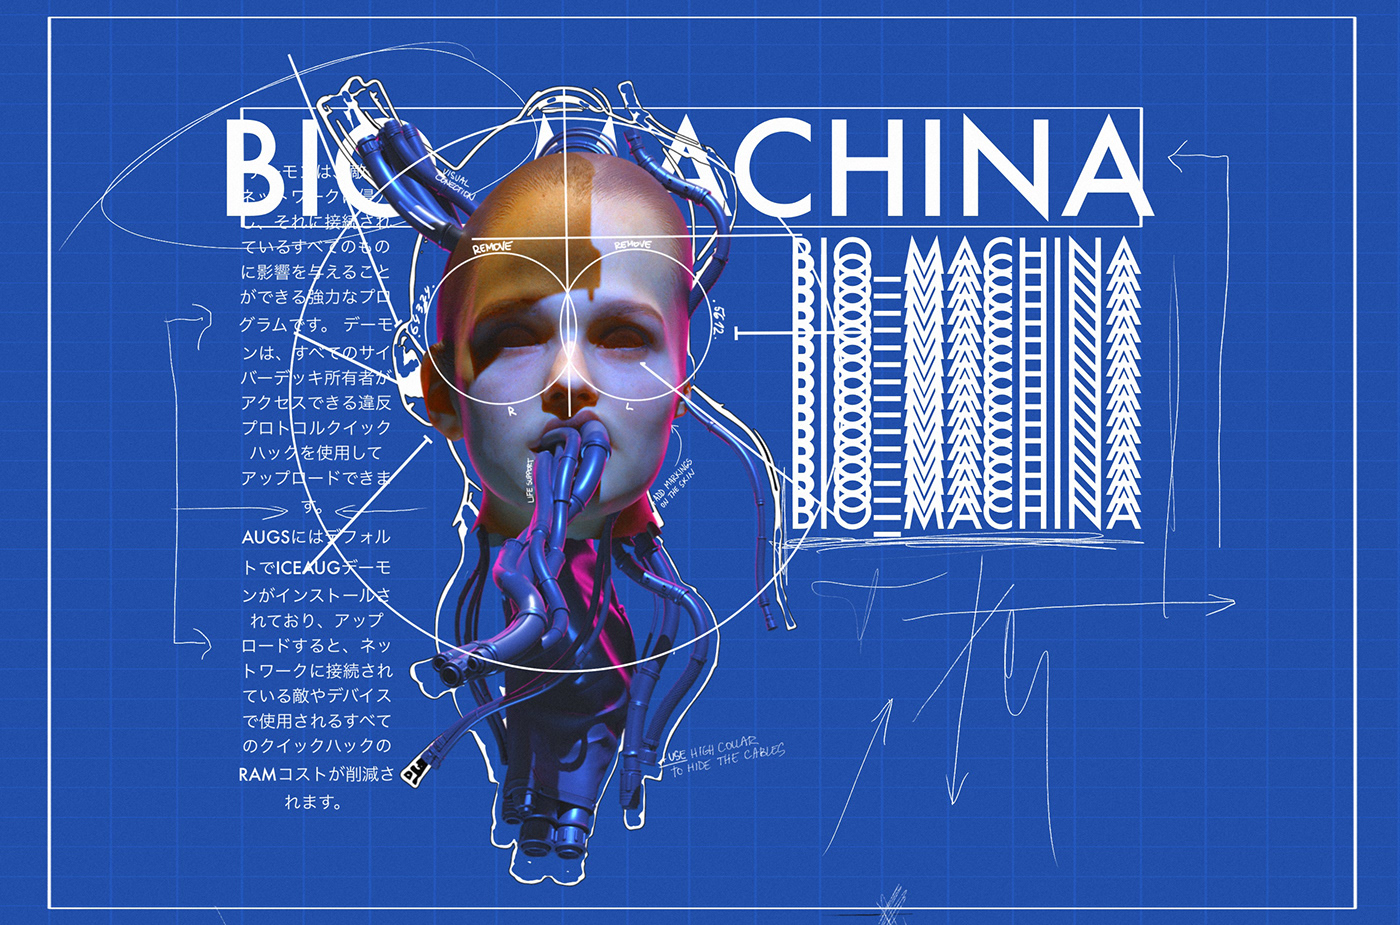 3D 3d art art blender Cyberpunk design future ILLUSTRATION  punk Retro